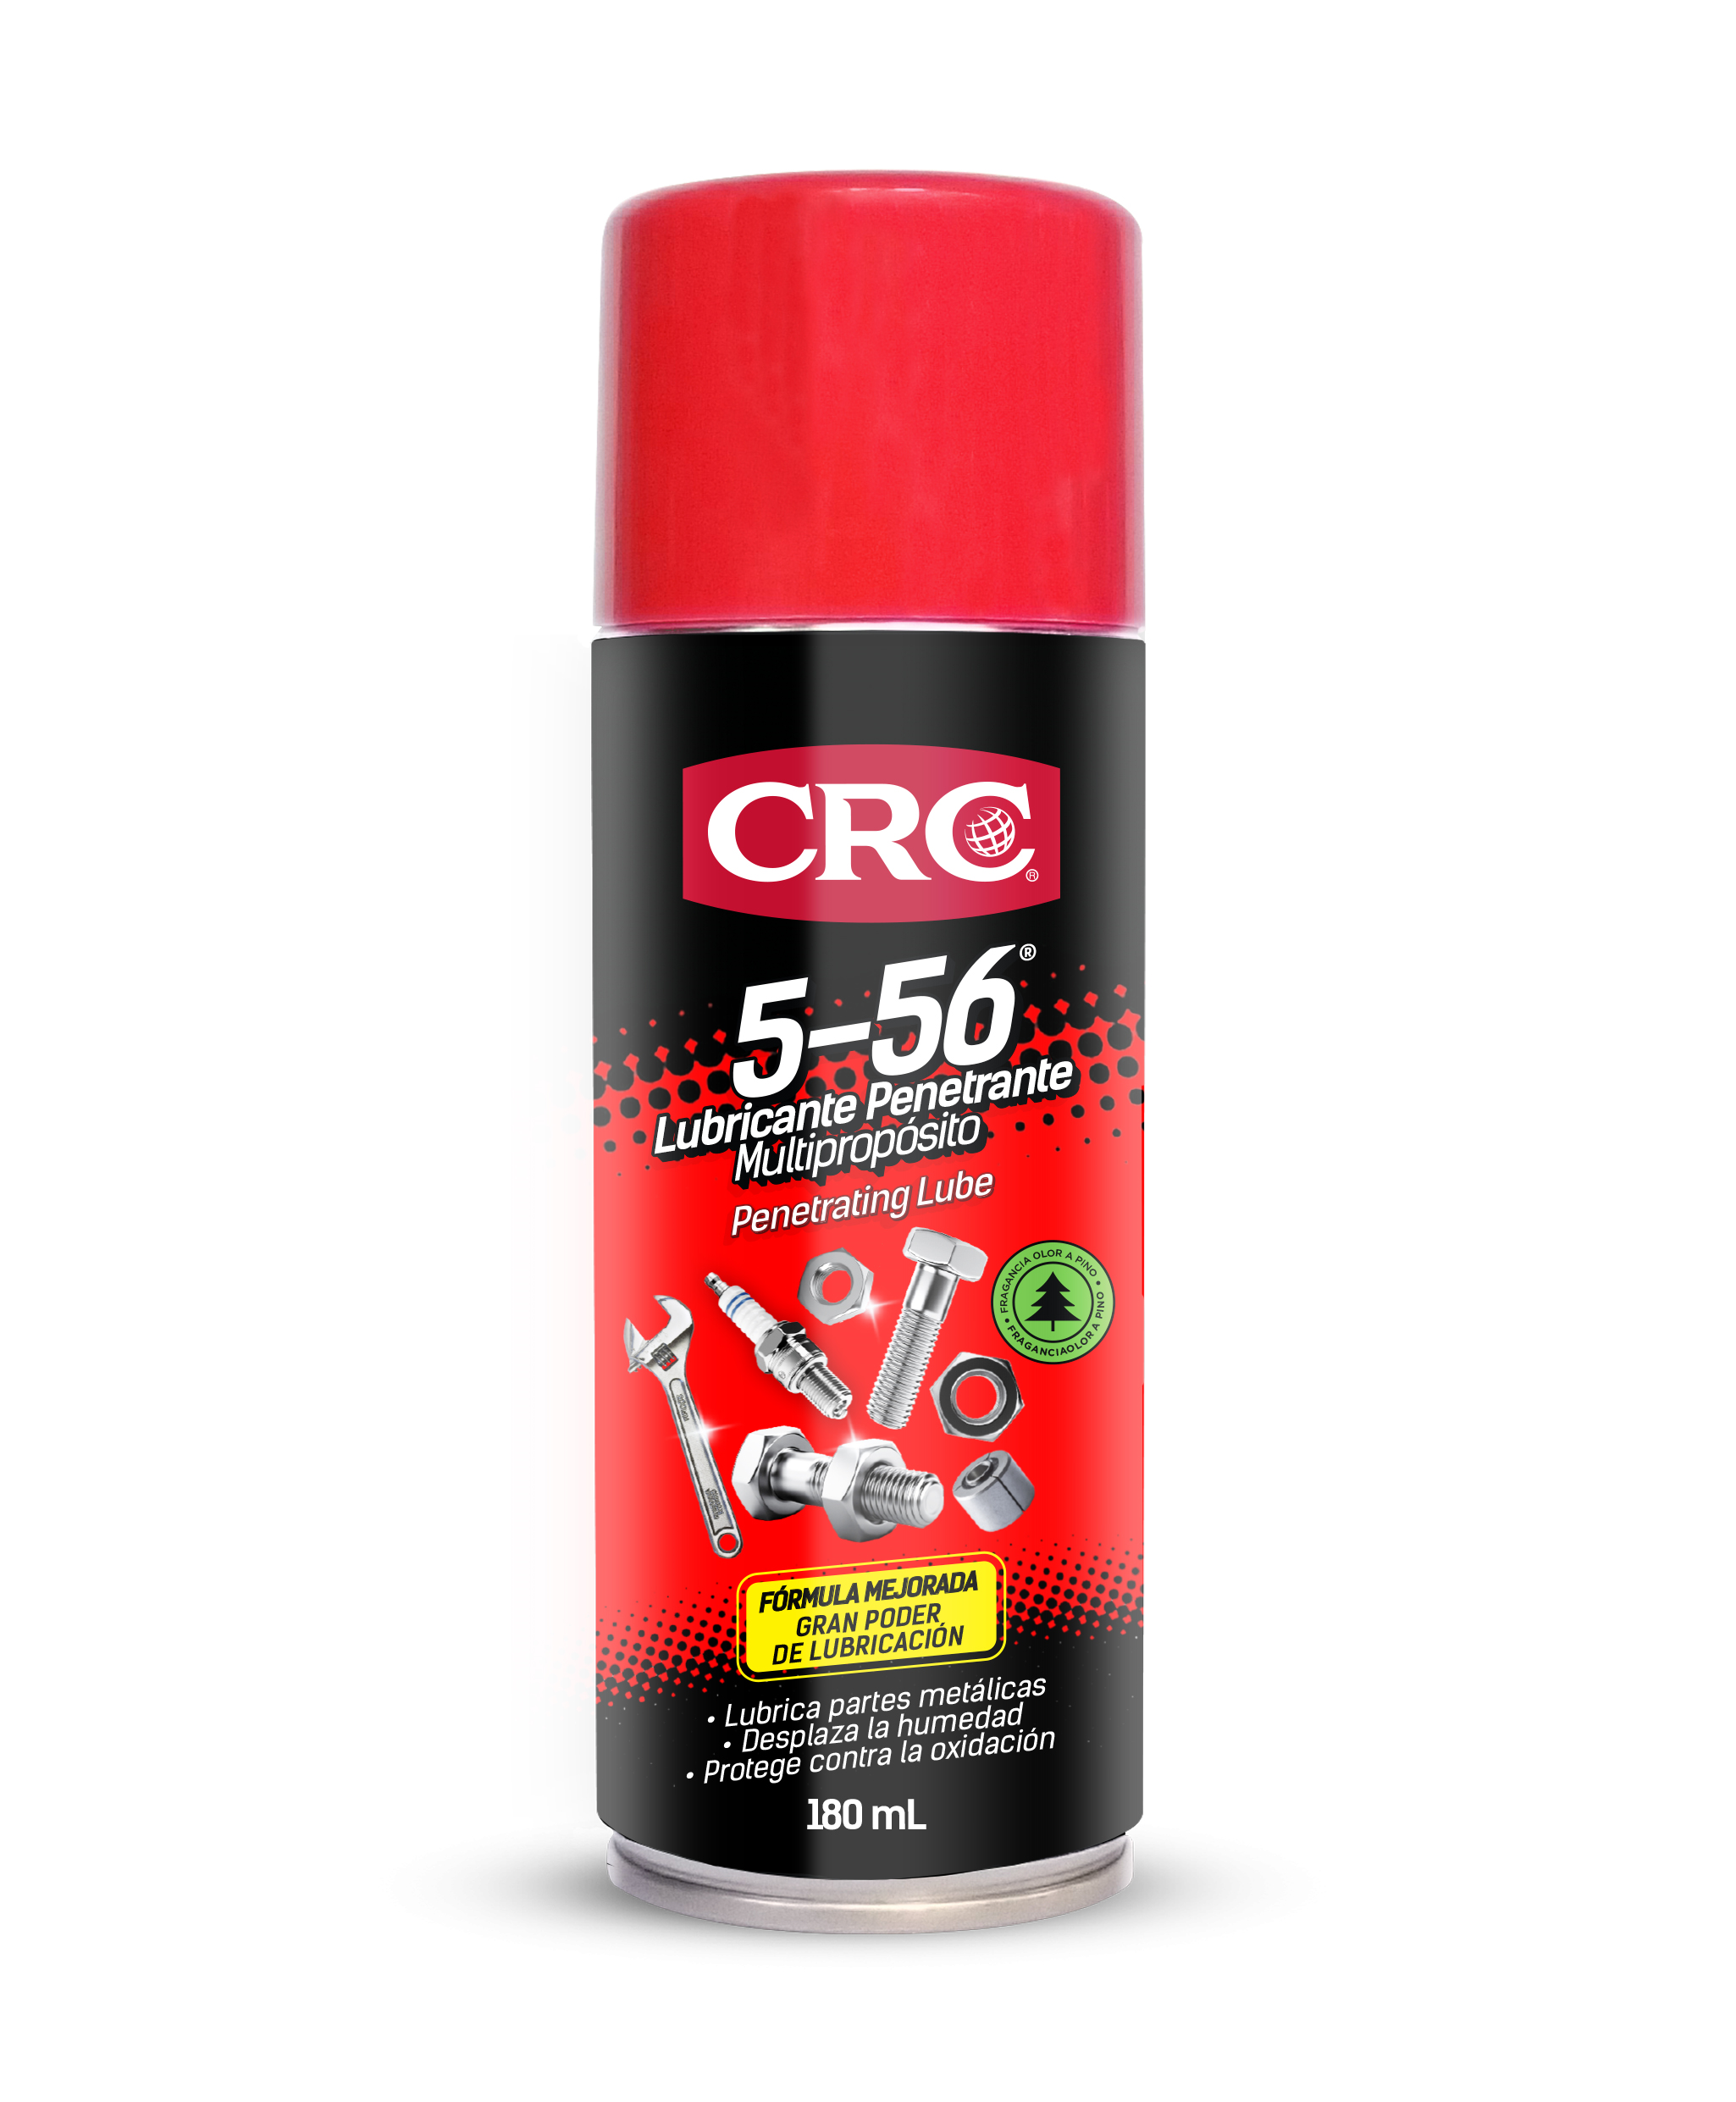 CRC Lubricante Penetrante Multipropósito 5-56®